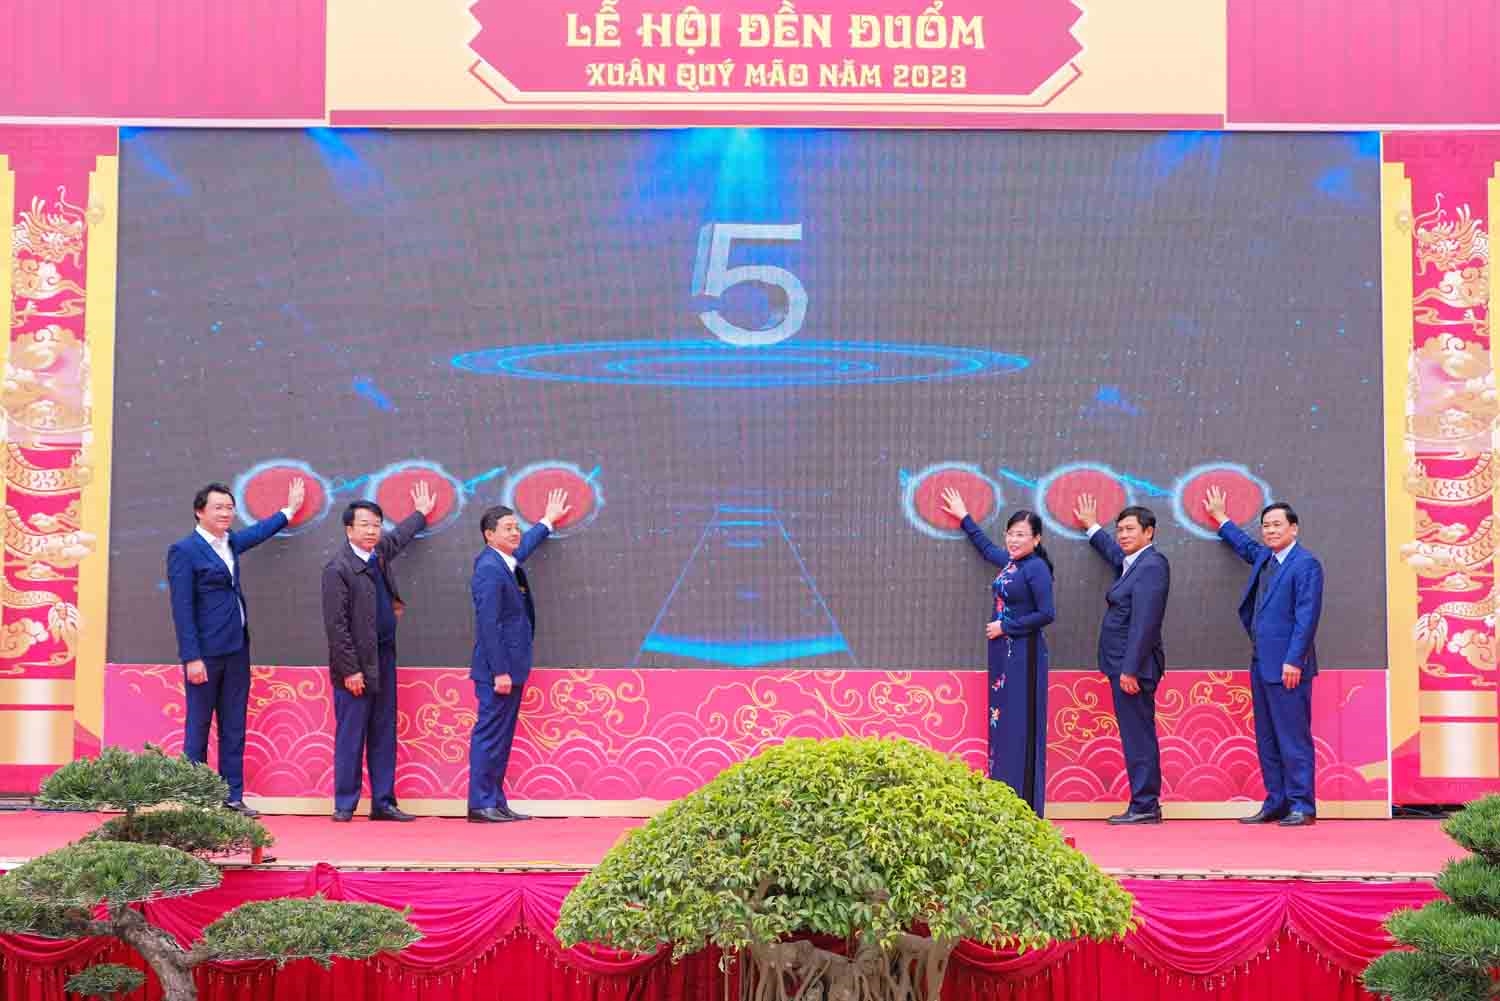 Bí thư Tỉnh ủy Nguyễn Thanh Hải cùng các đại biểu nhấn nút khởi động số hóa Di tích lịch sử - danh thắng Quốc gia đền Đuổm